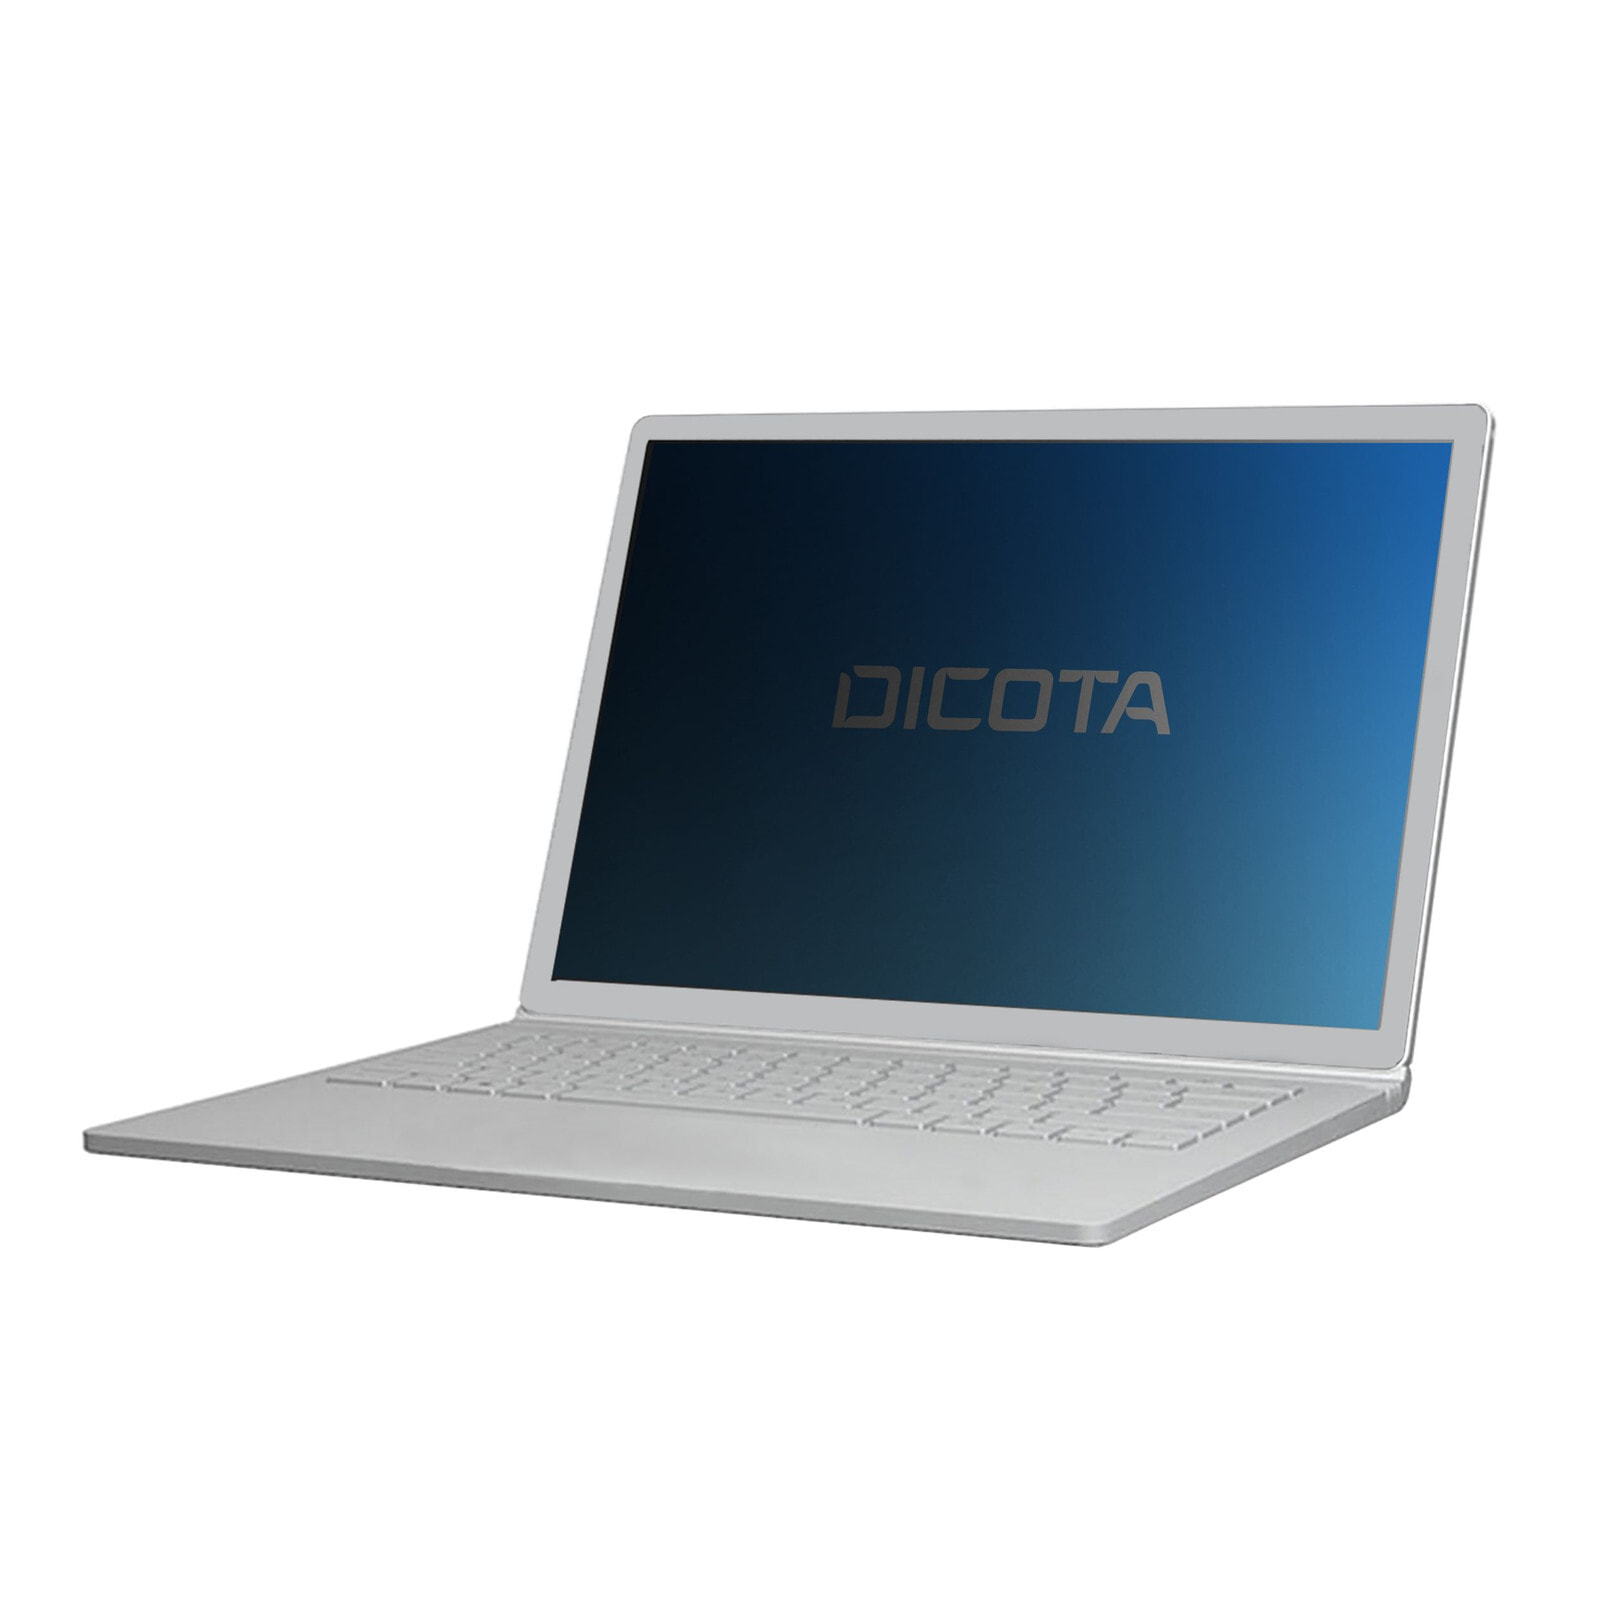 Dicota D70196 защитный фильтр для дисплеев 33 cm (13